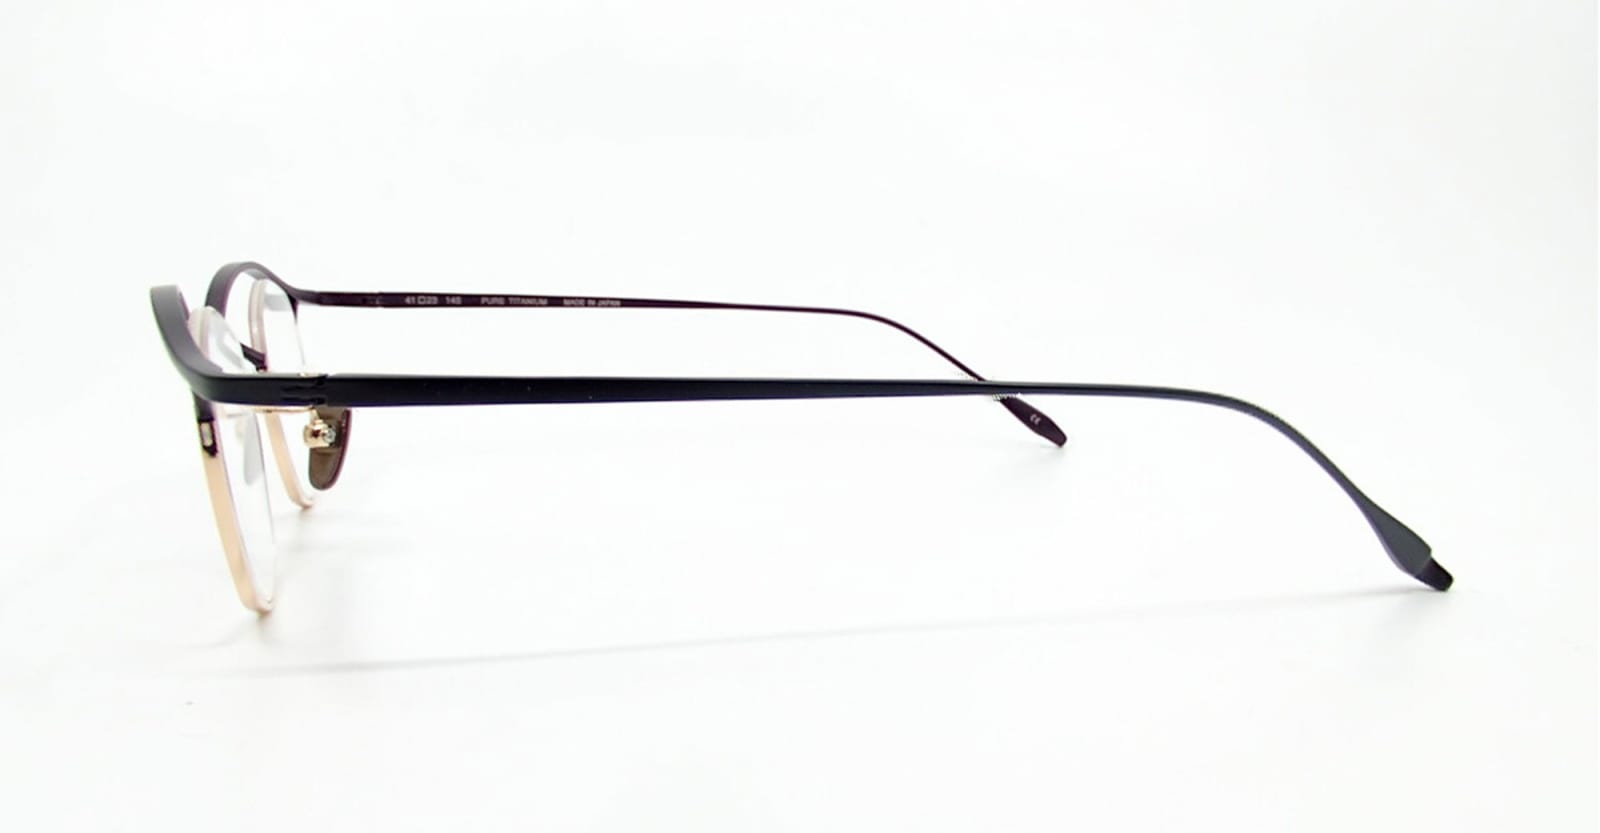 Titanos X Mf-002 - Black / Gold Rx Glasses In Gold/black